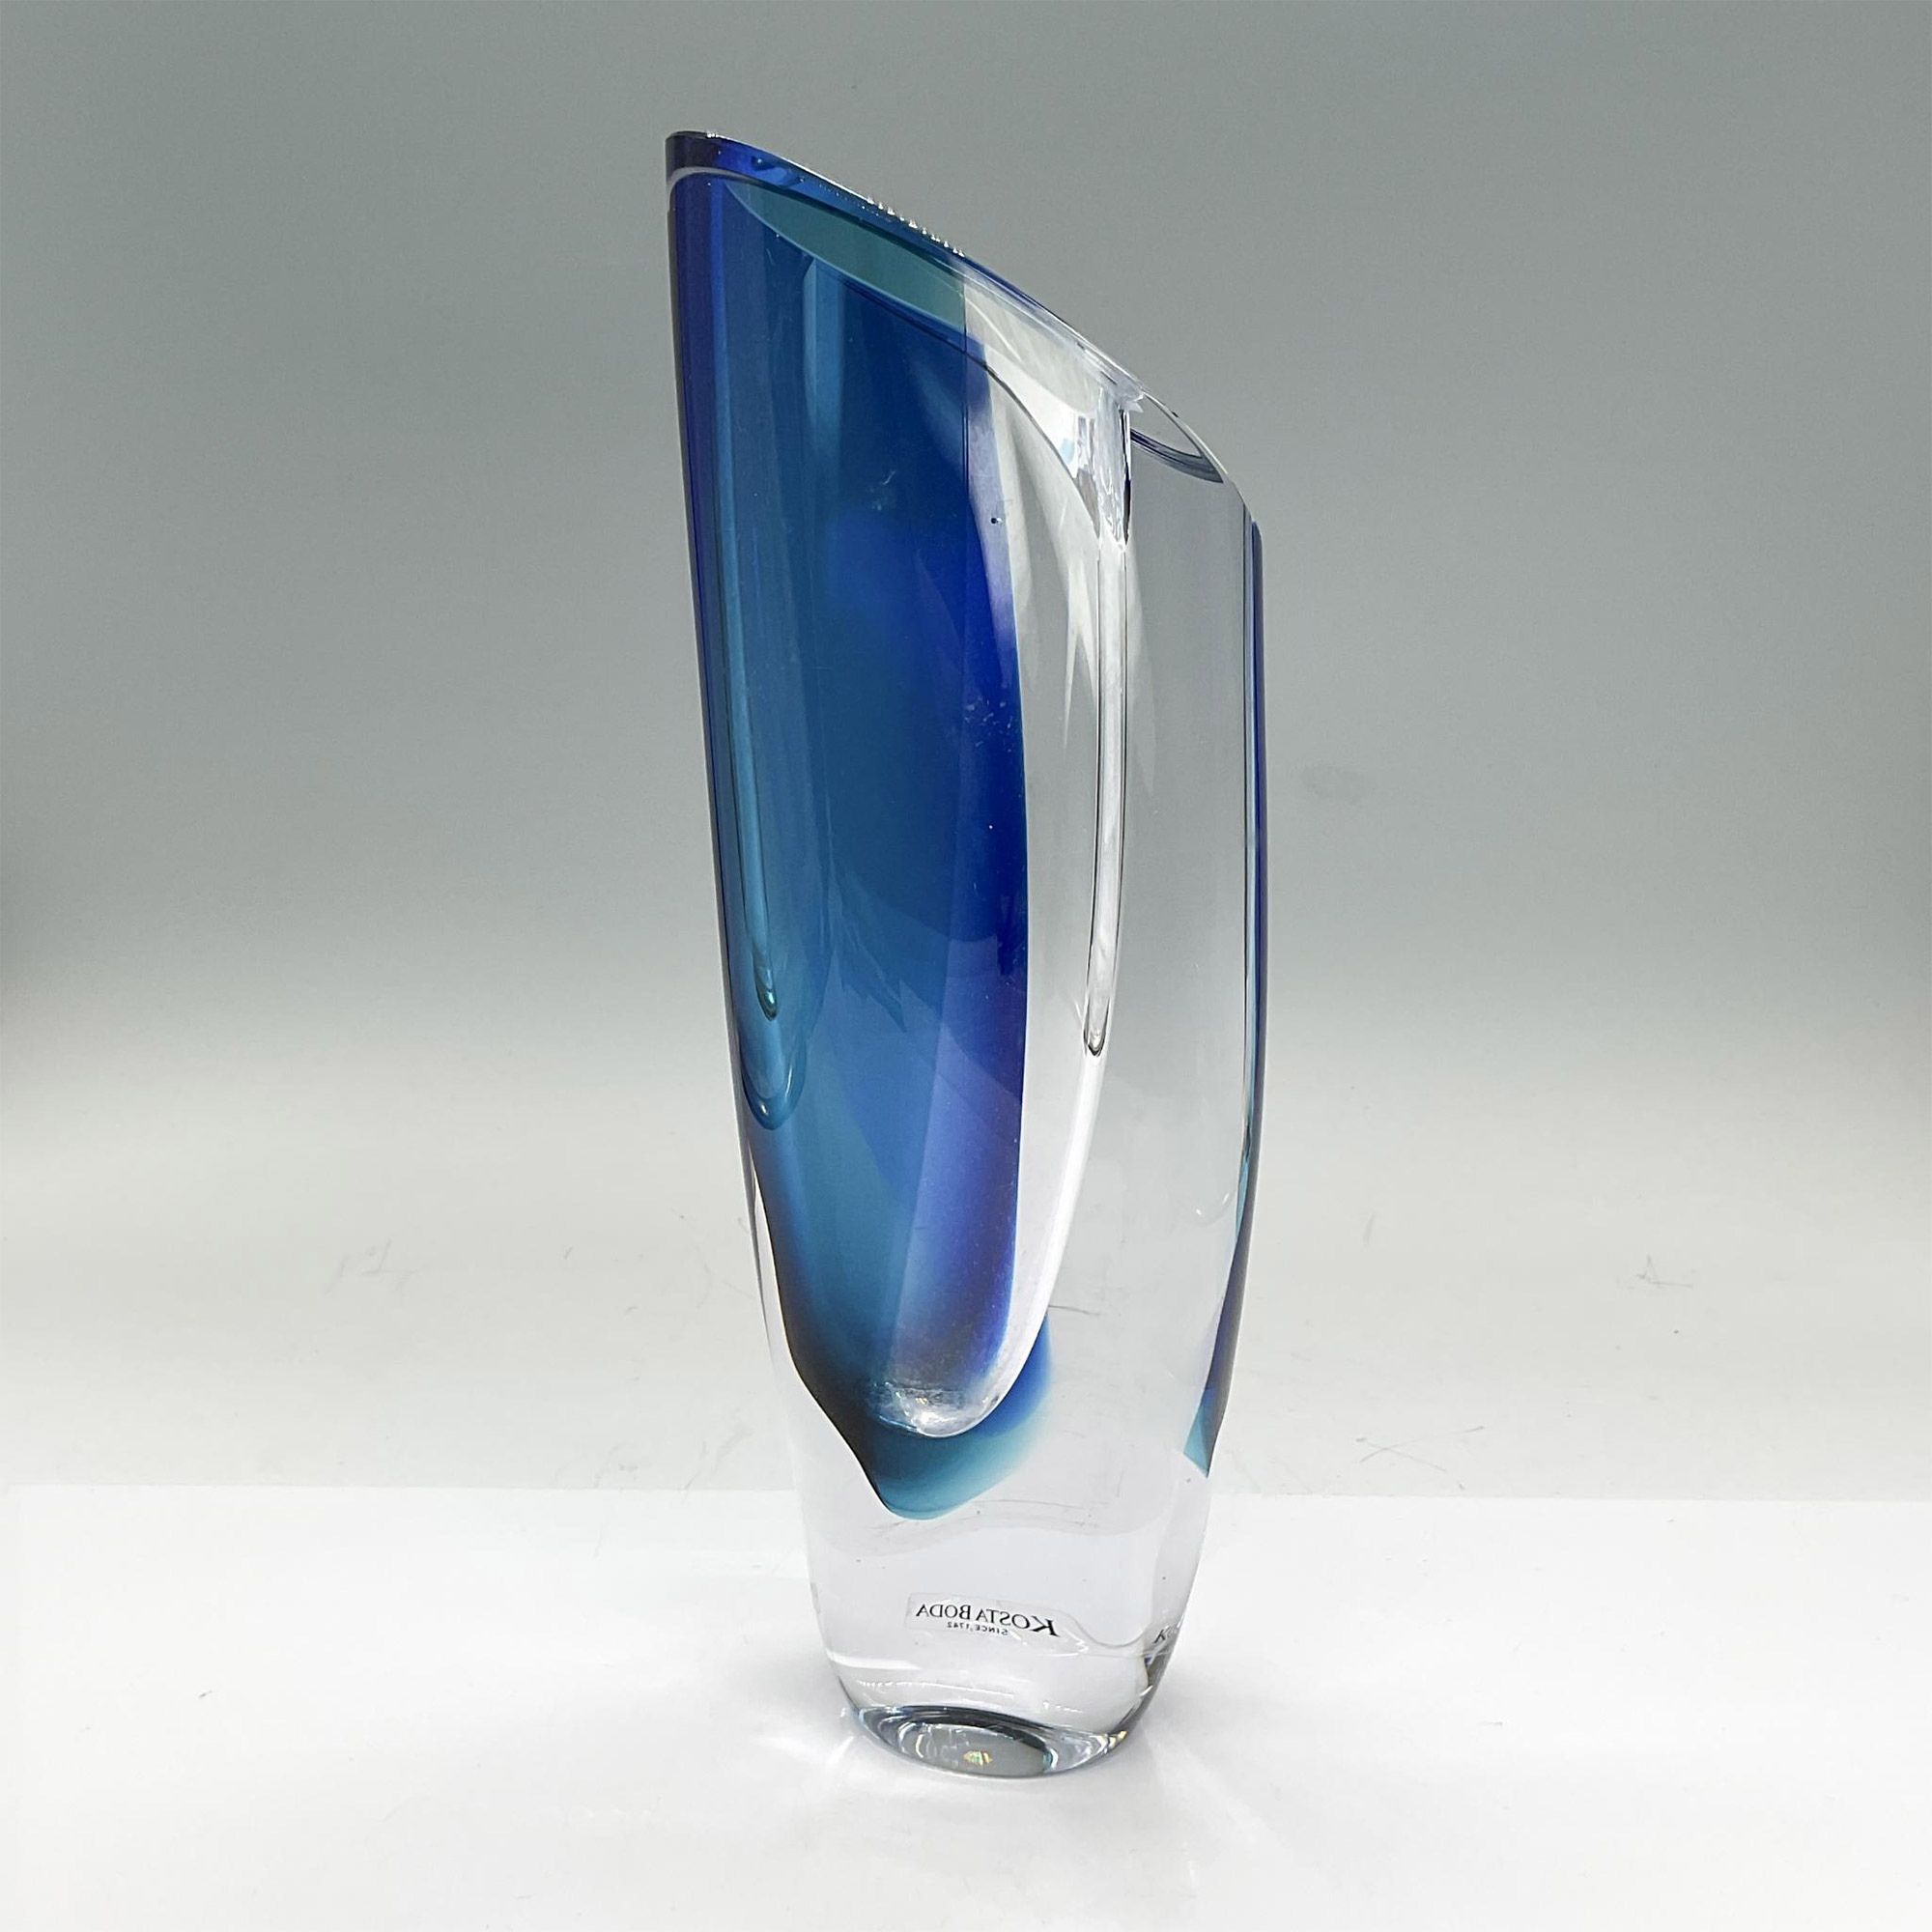 Kosta Boda Glass Vase, Saraband Blue - Image 2 of 3